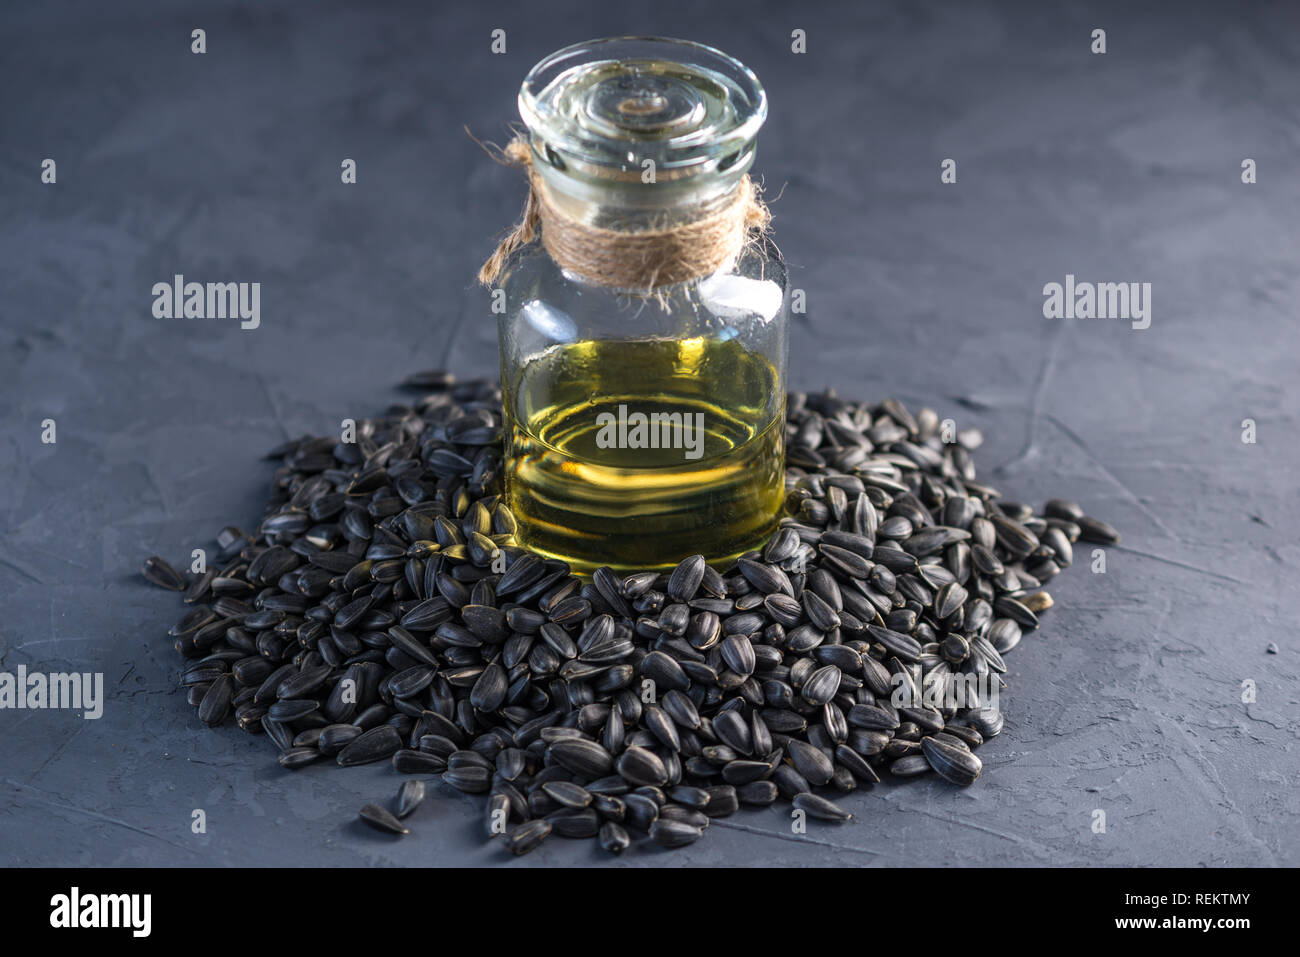 Les graines de tournesol dans un tas d'or et de l'huile dans une bouteille en verre sur la table. Concept alimentation saine avec des graisses végétales. Banque D'Images